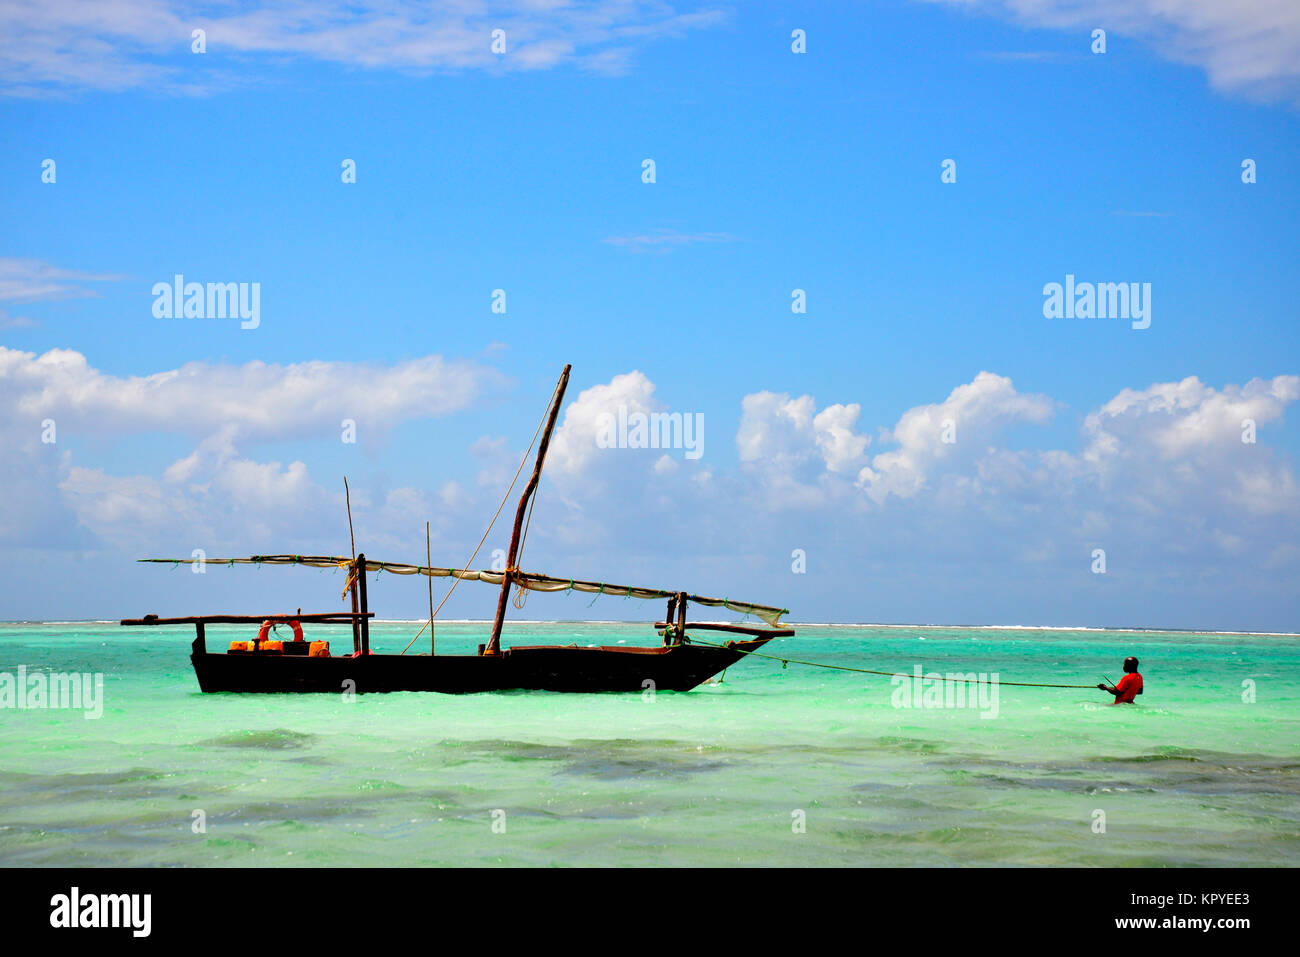 Zanzibar est un paradis de l'océan Indien que la plupart des gens peuvent se permettre de visiter pour paresseux vacances sur les plages chaudes. Banque D'Images